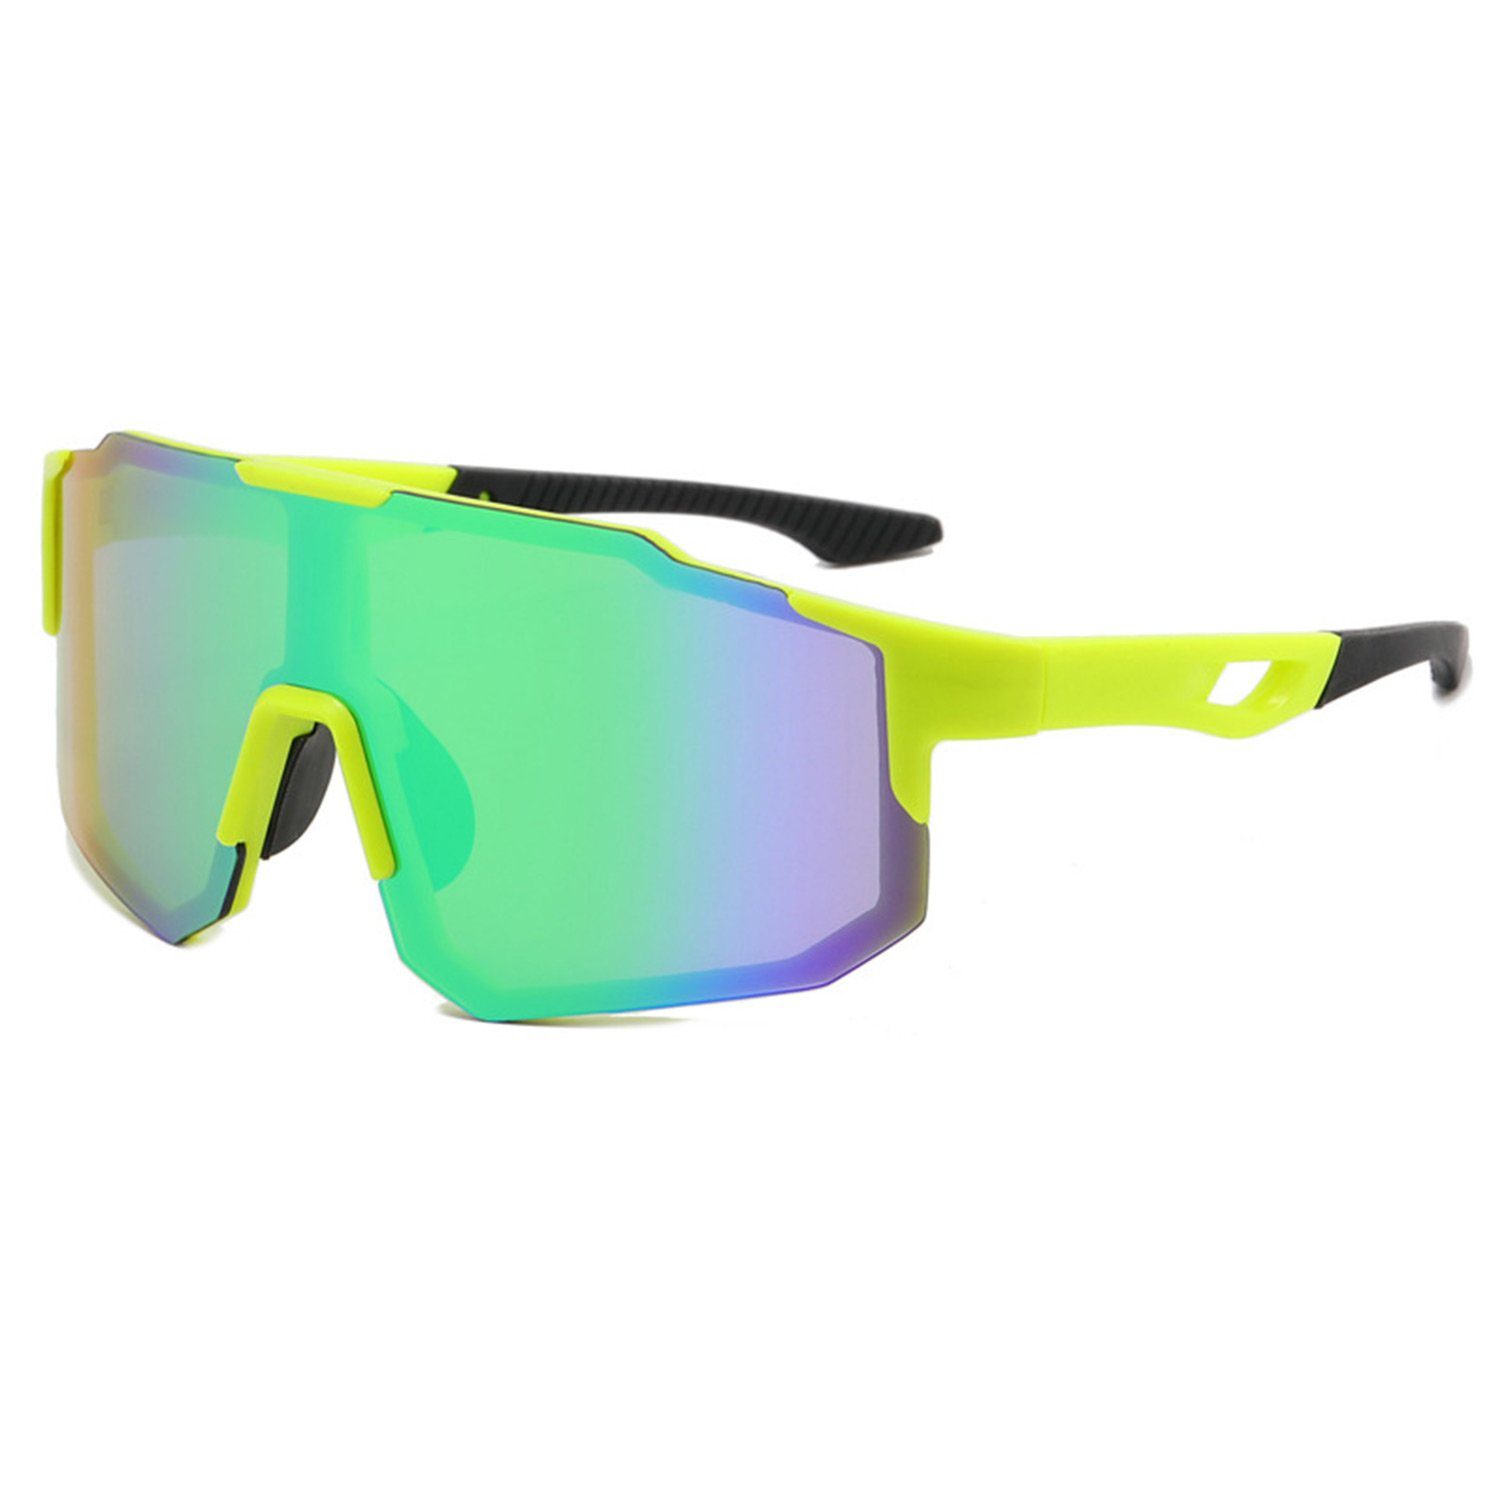 MAGICSHE Fahrradbrille Fahrradbrillen für Herren und Damen, Sport-Sonnenbrillen, Windschutzscheibe, UV-beständige und klare Sicht Brille Gelbe Box grüne Folie | Fahrradbrillen